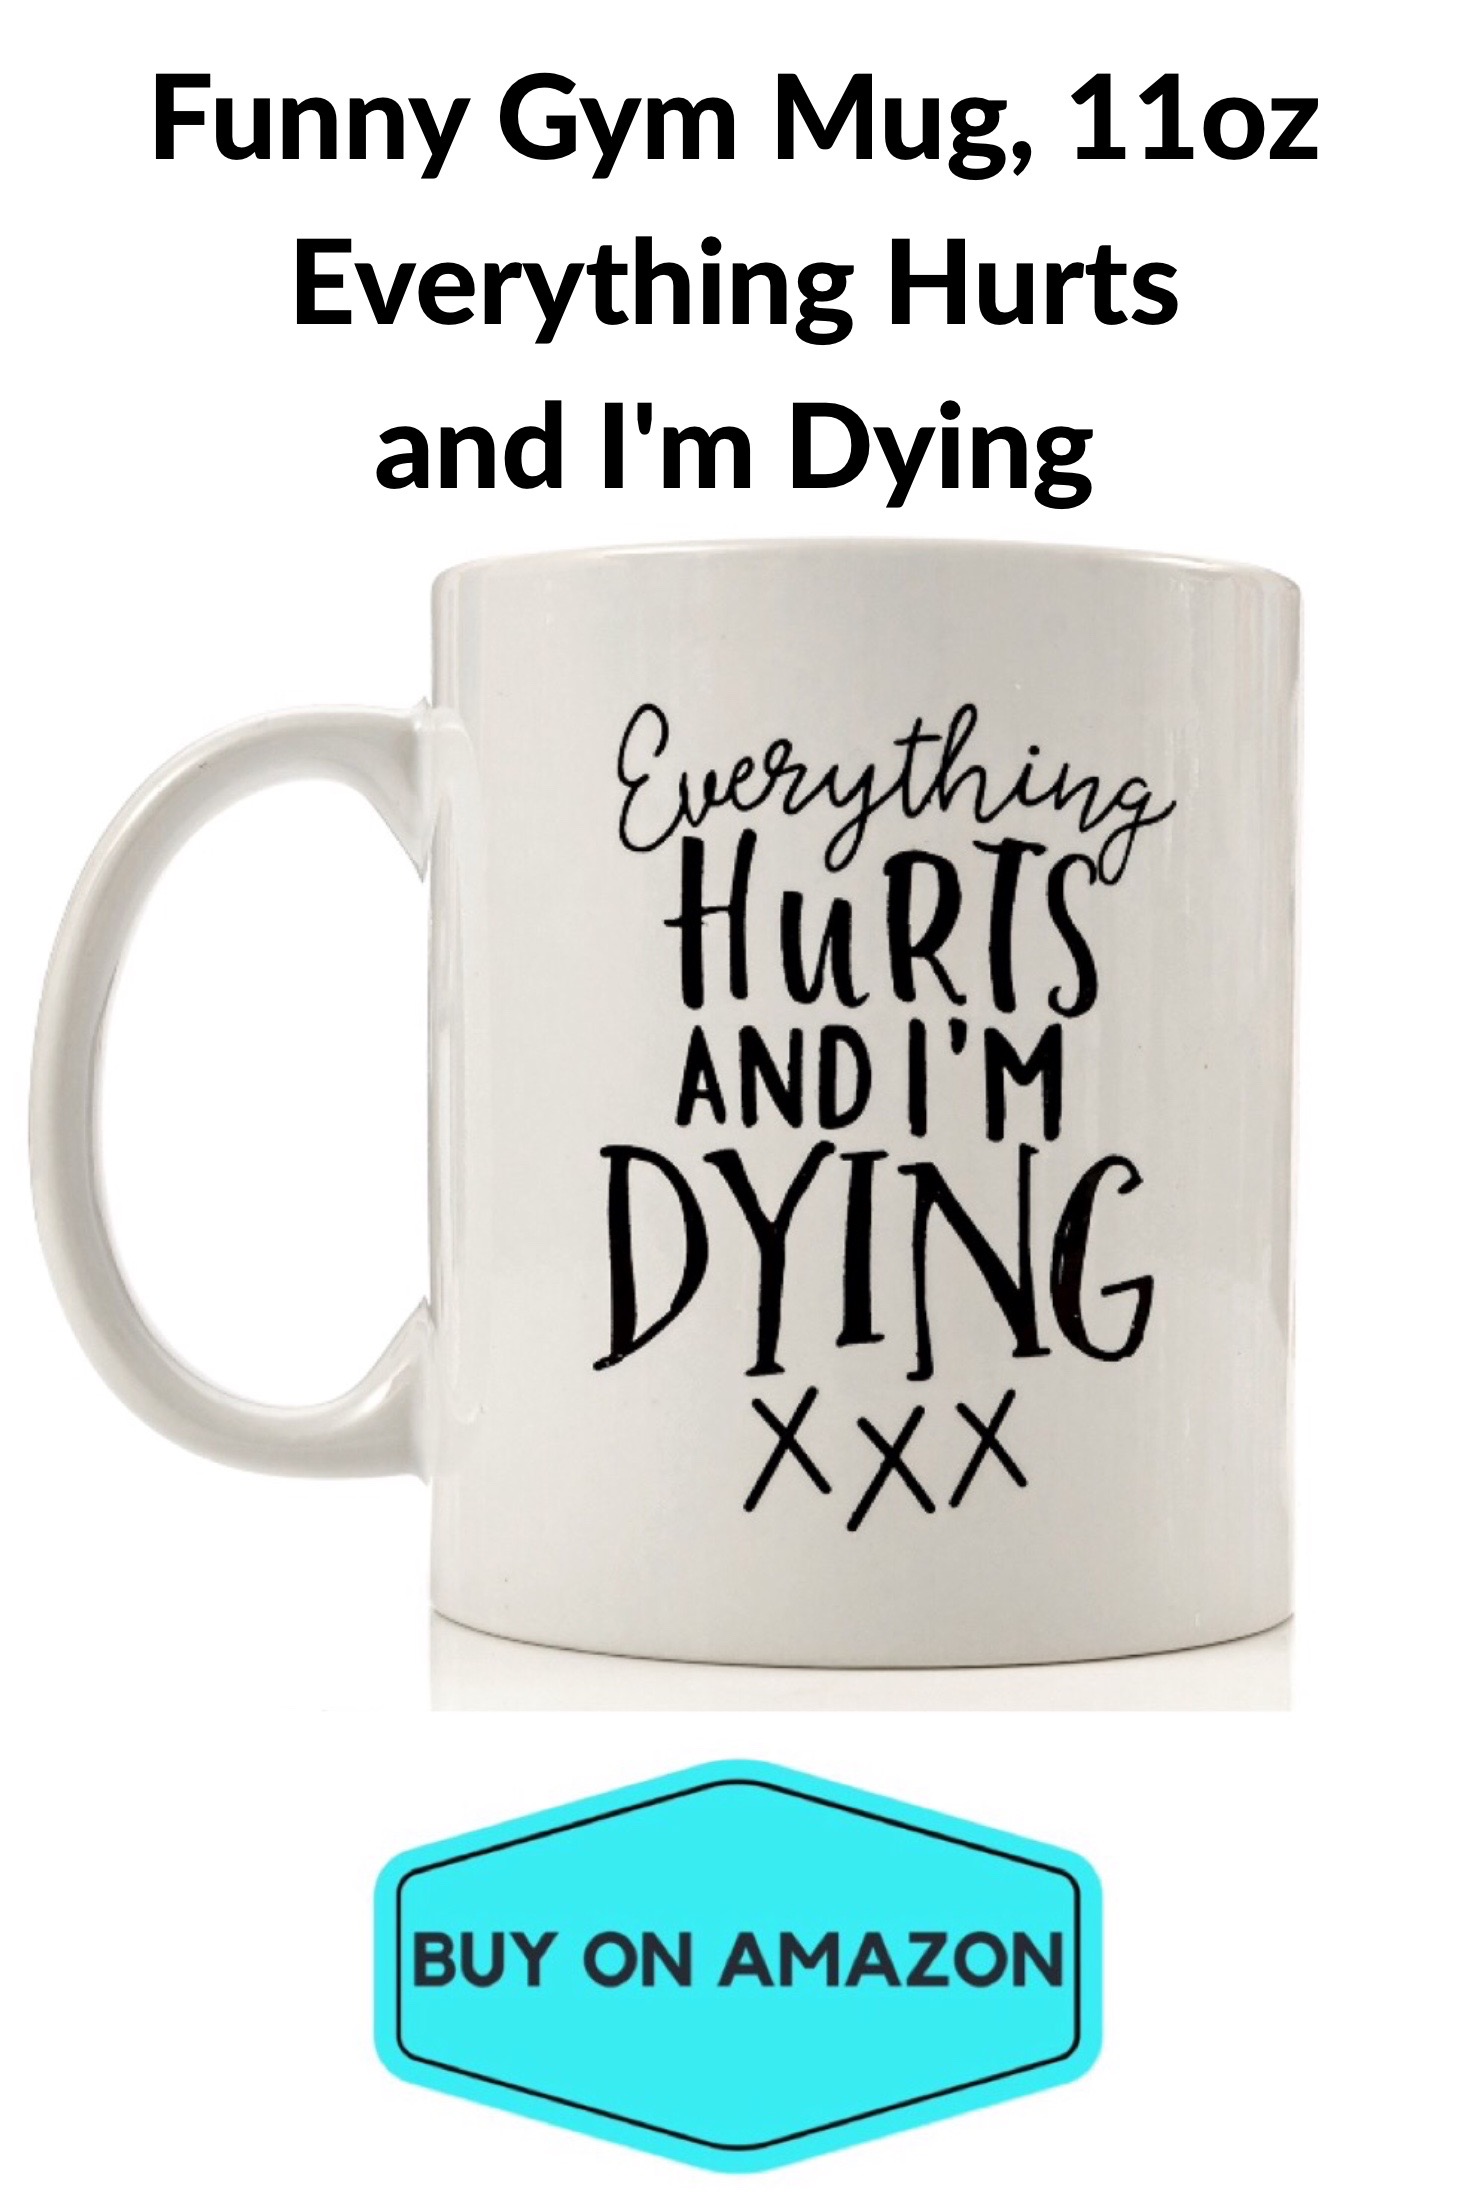 'Everything Hurts and I'm Dying' Mug